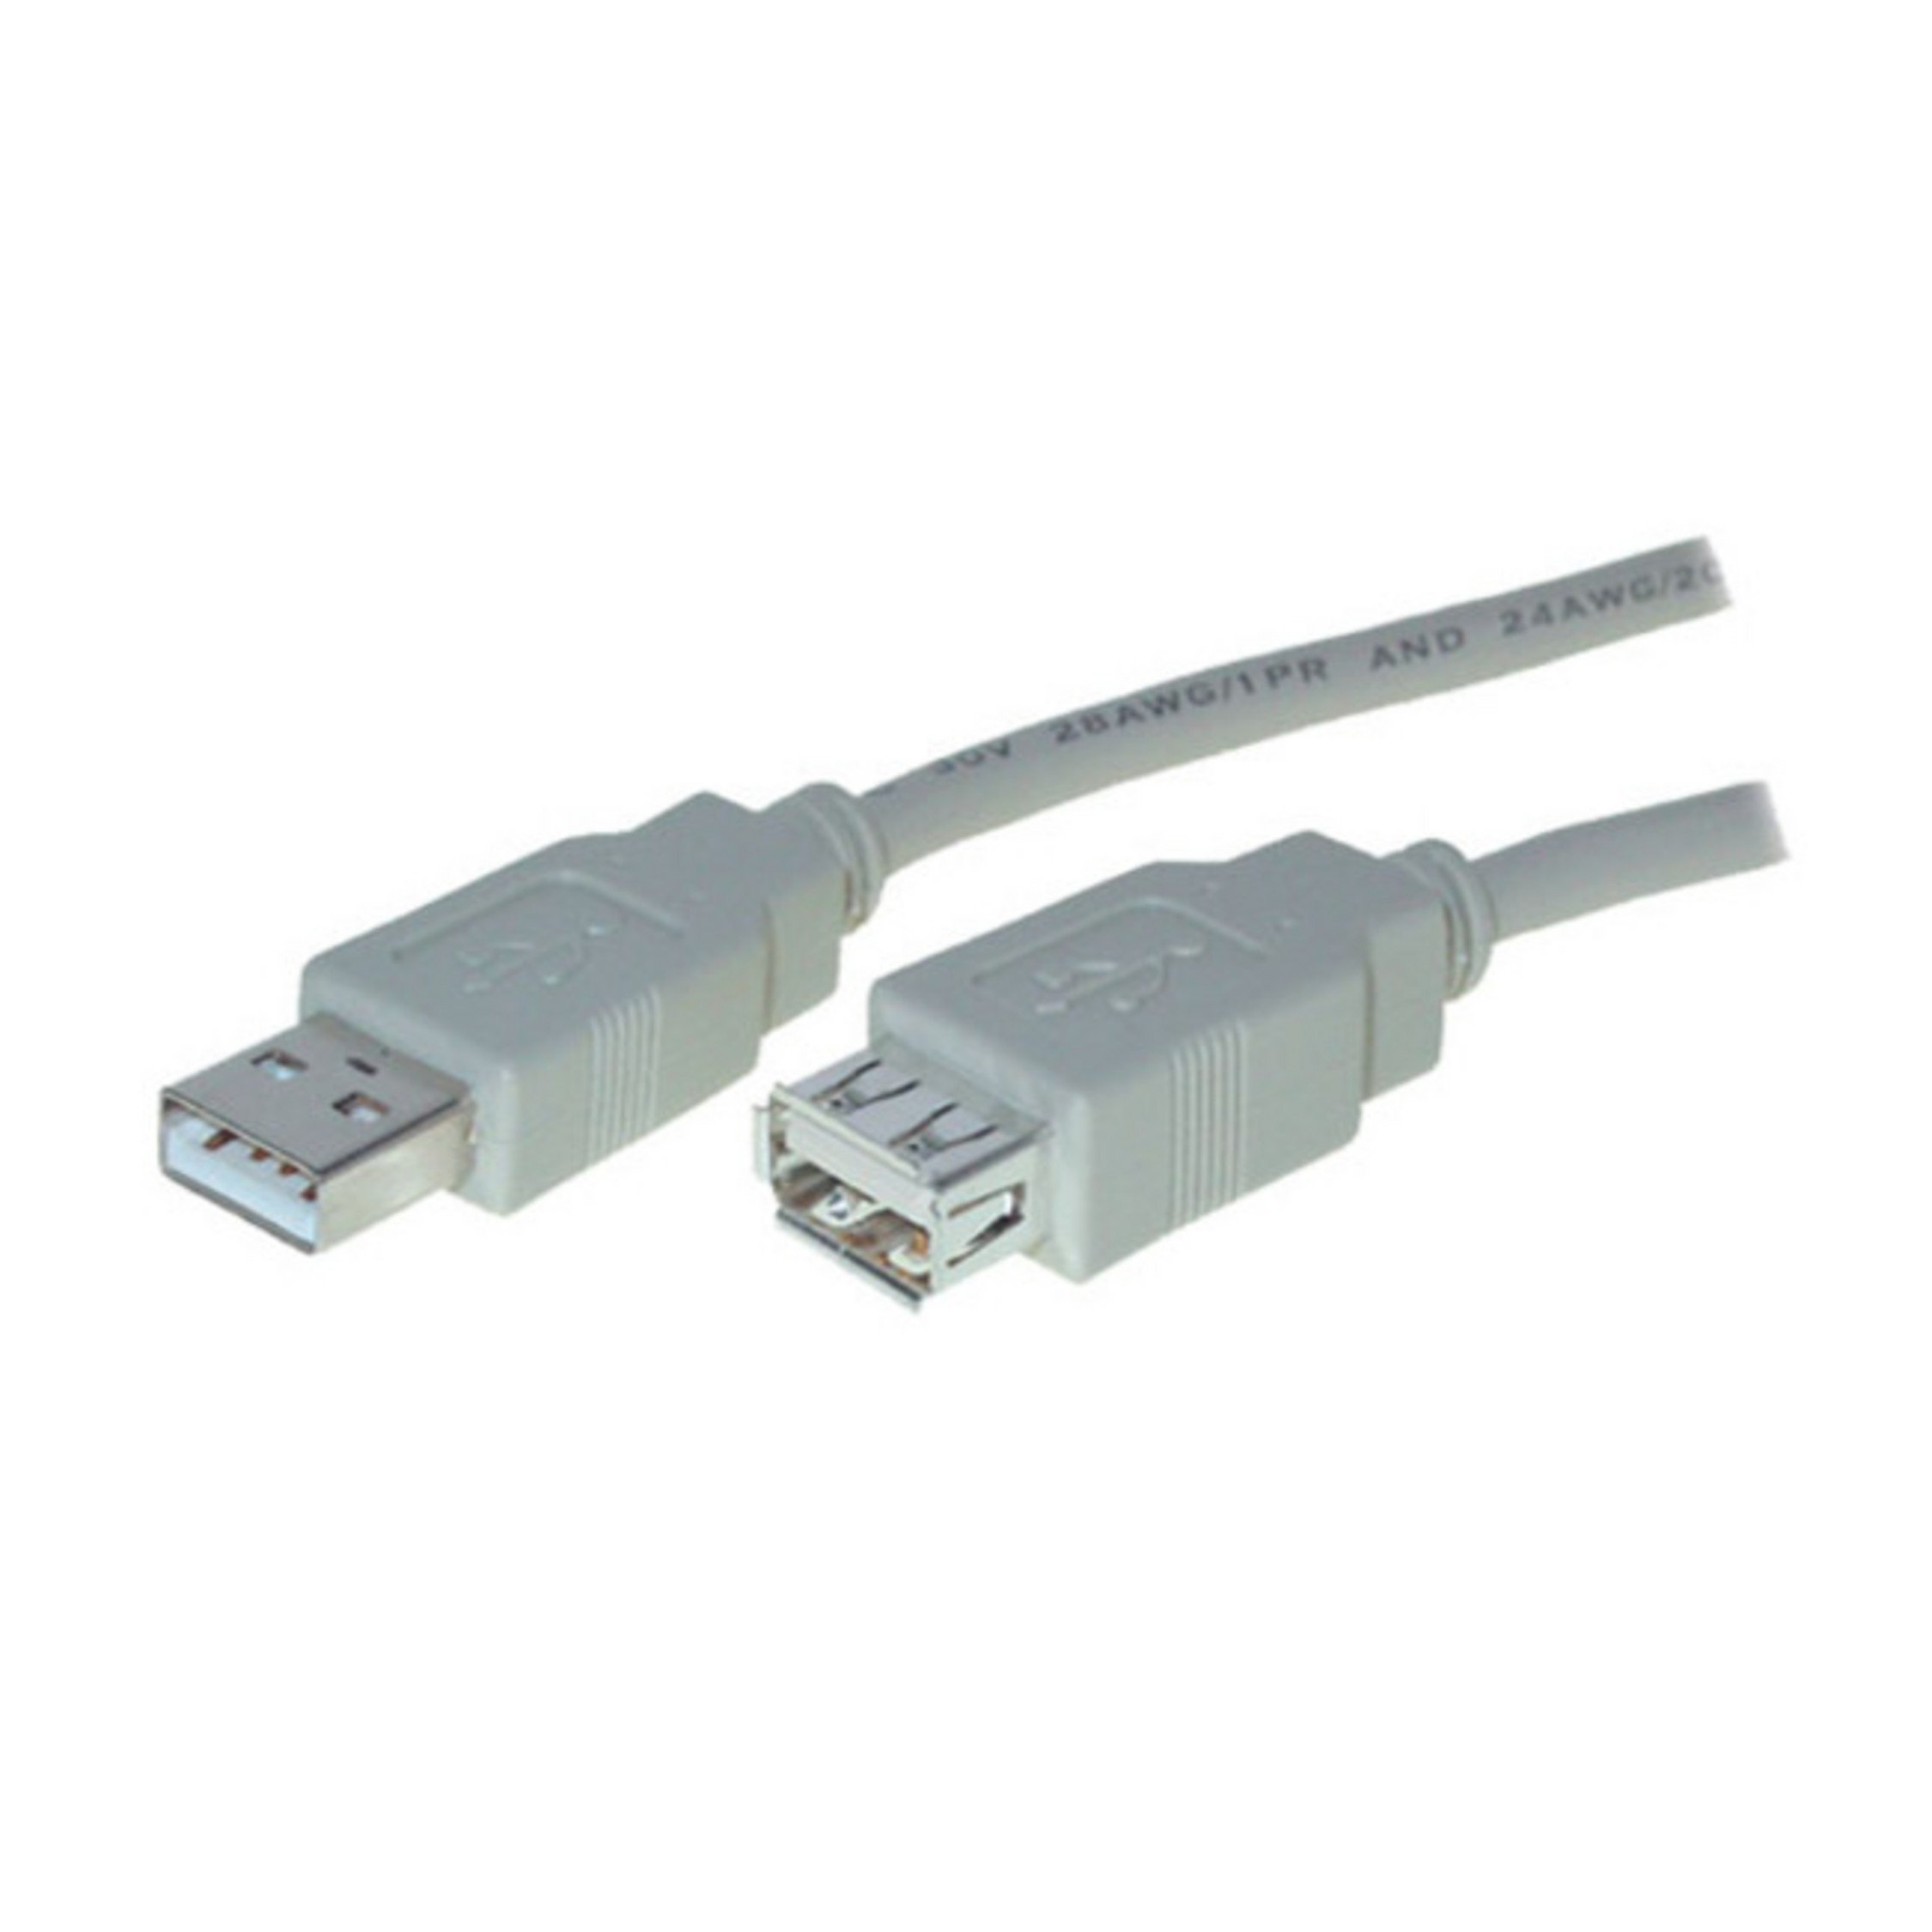 S/CONN MAXIMUM CONNECTIVITY USB A / USB Kabel Speed Buchse 2.0, High A Stecker Verlängerung USB 3m